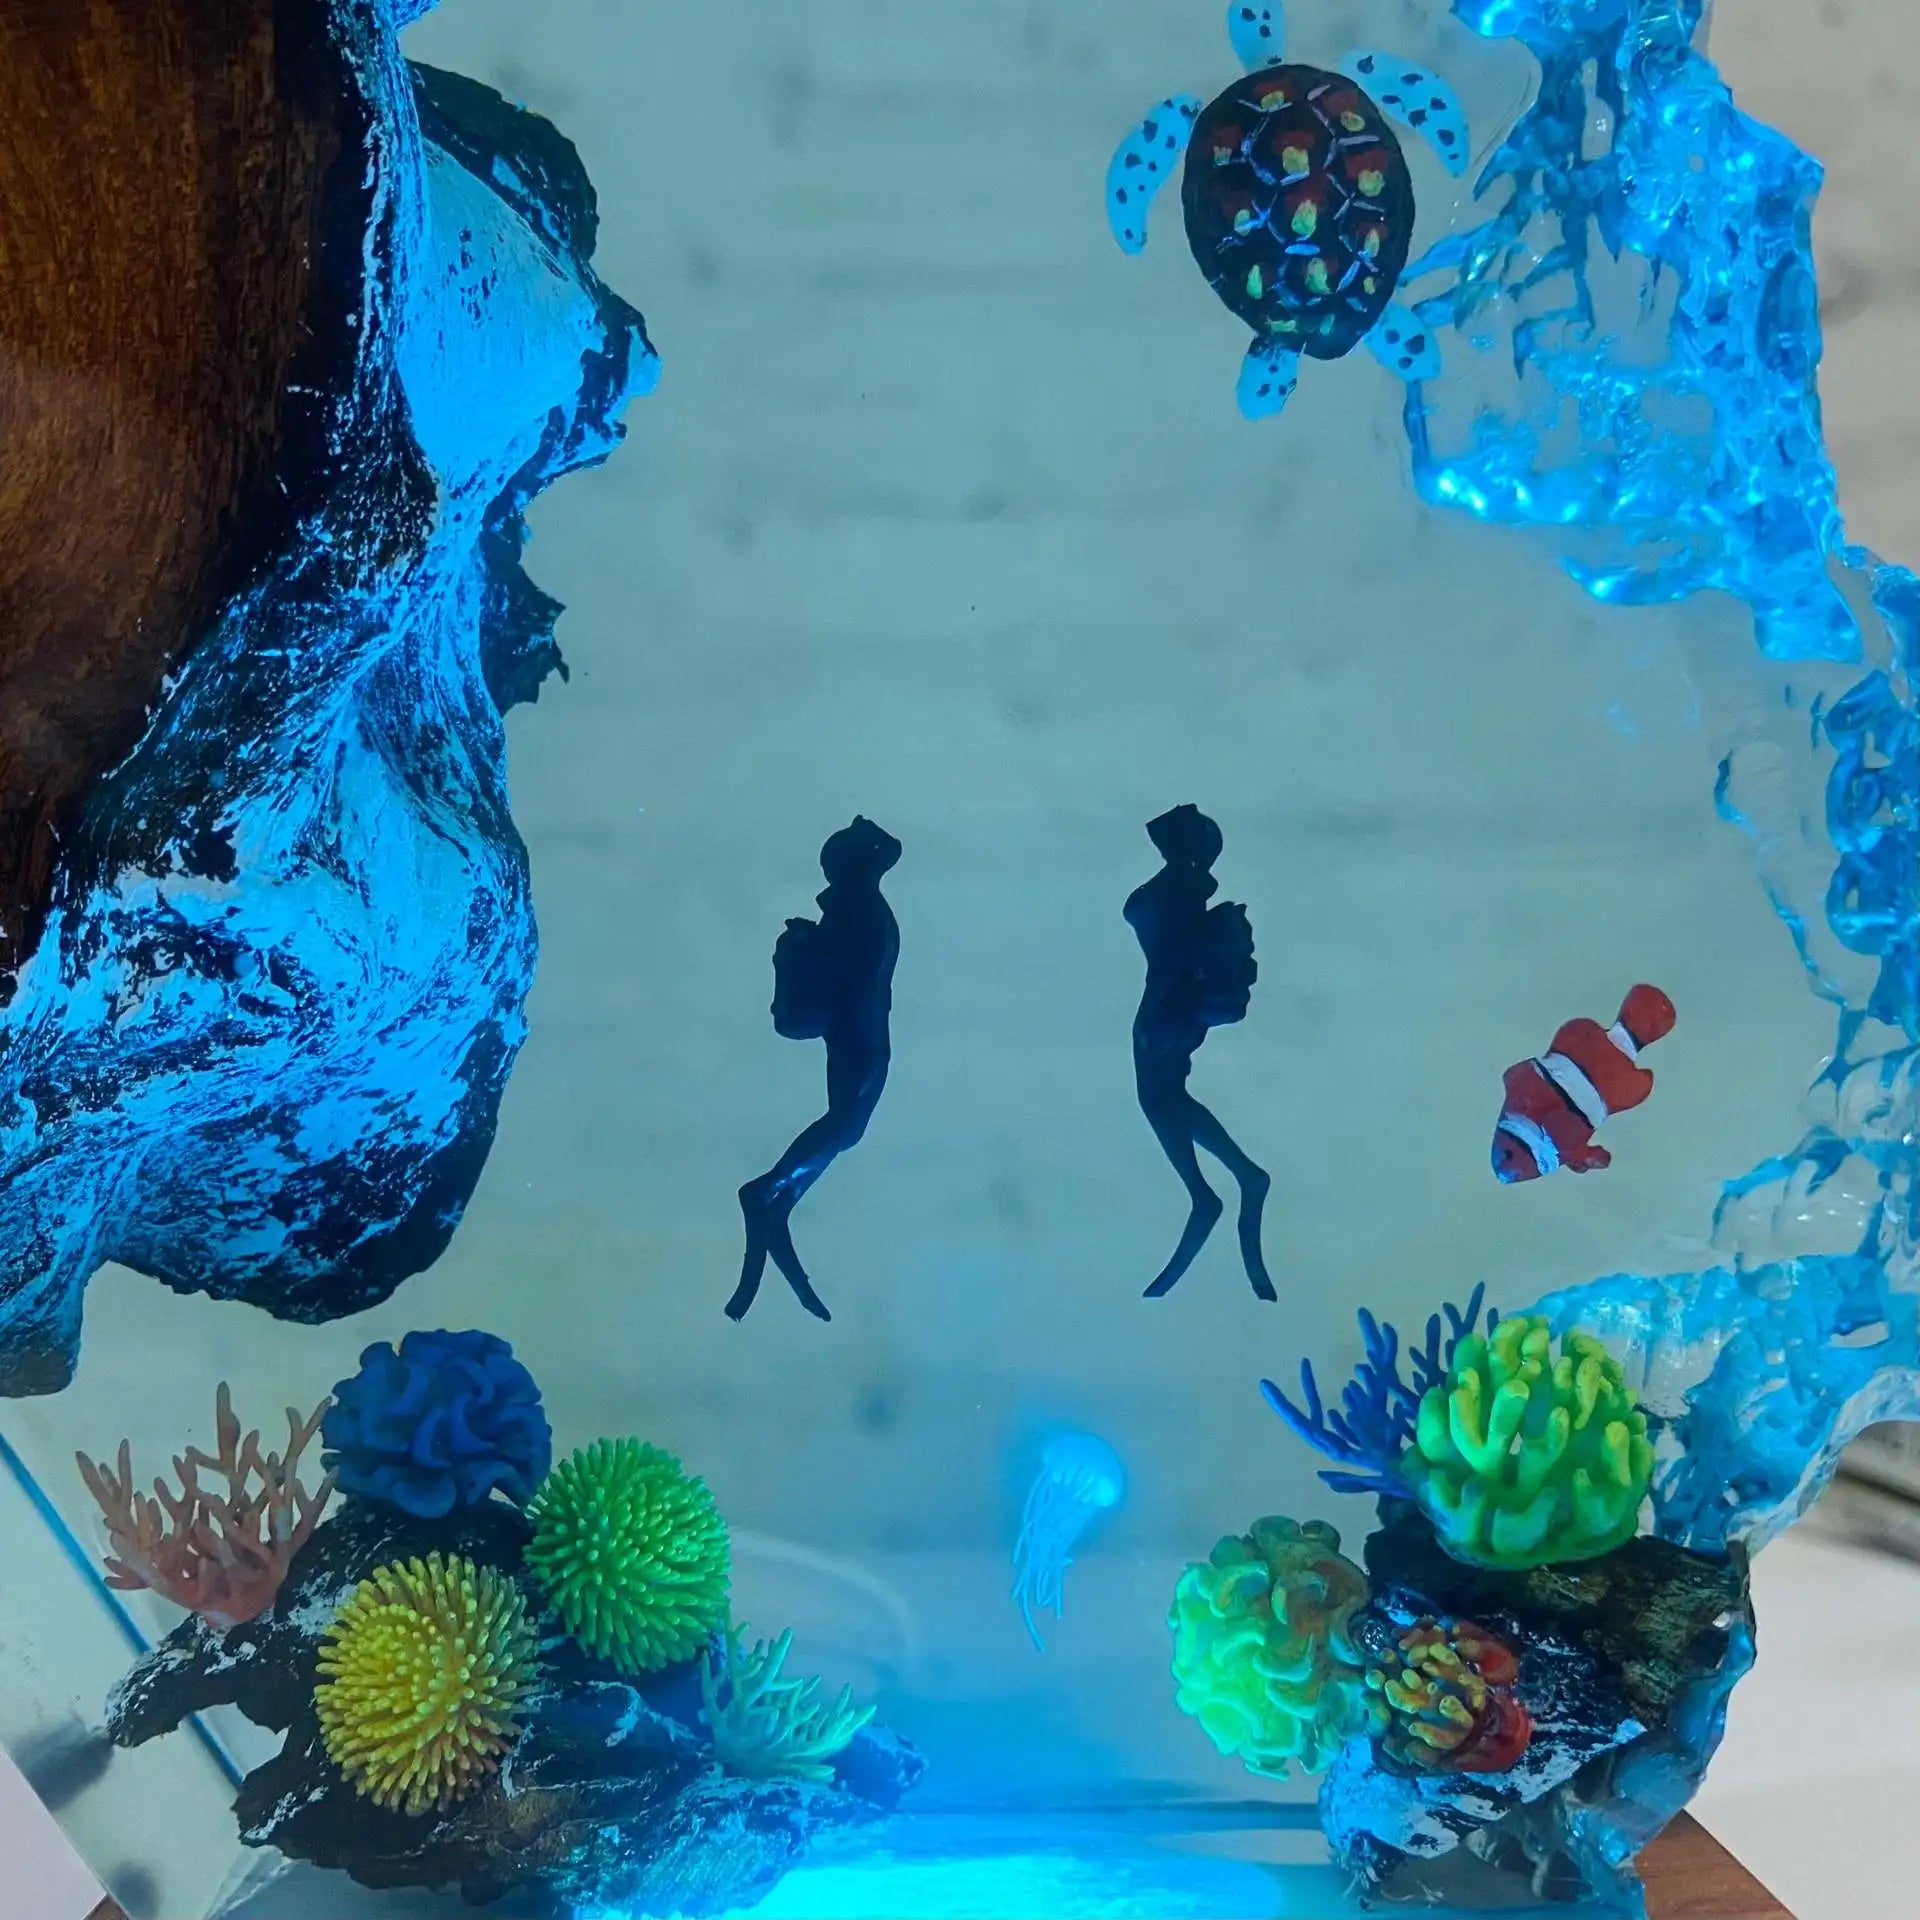 [Lustig] Ozean Manta Strahlen Taucher Meeresschildkröte Nachtlicht LED Light Collection Model Home Decoration Ornamente Kinder Geburtstag Geschenk